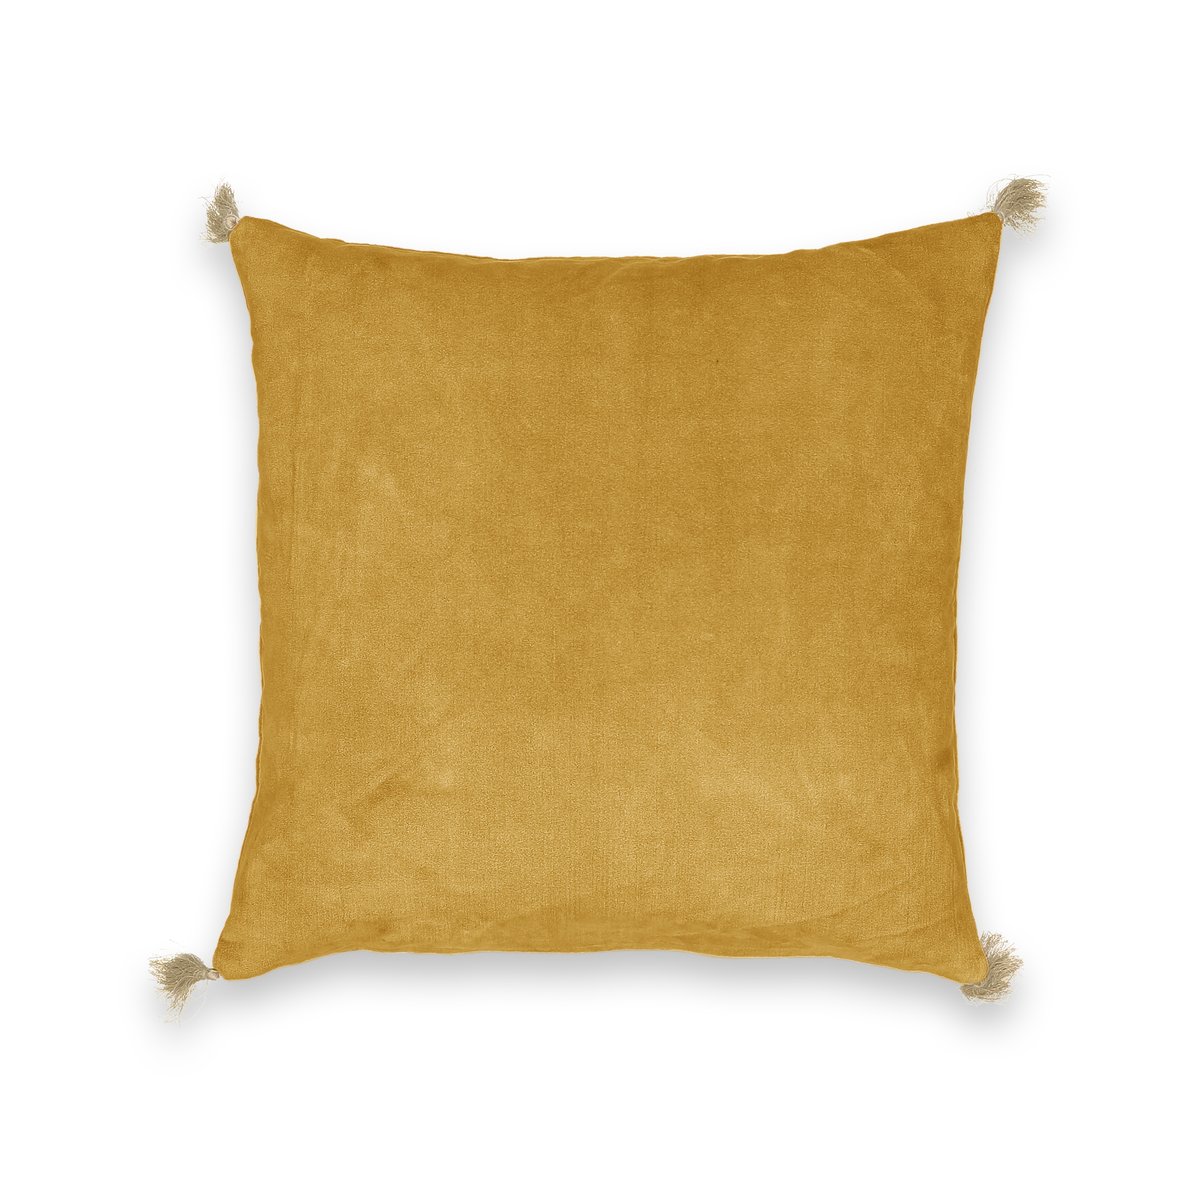 Чехол LaRedoute На подушку велюровый Cacolet 50 x 30 см желтый, размер 50 x 30 см - фото 1